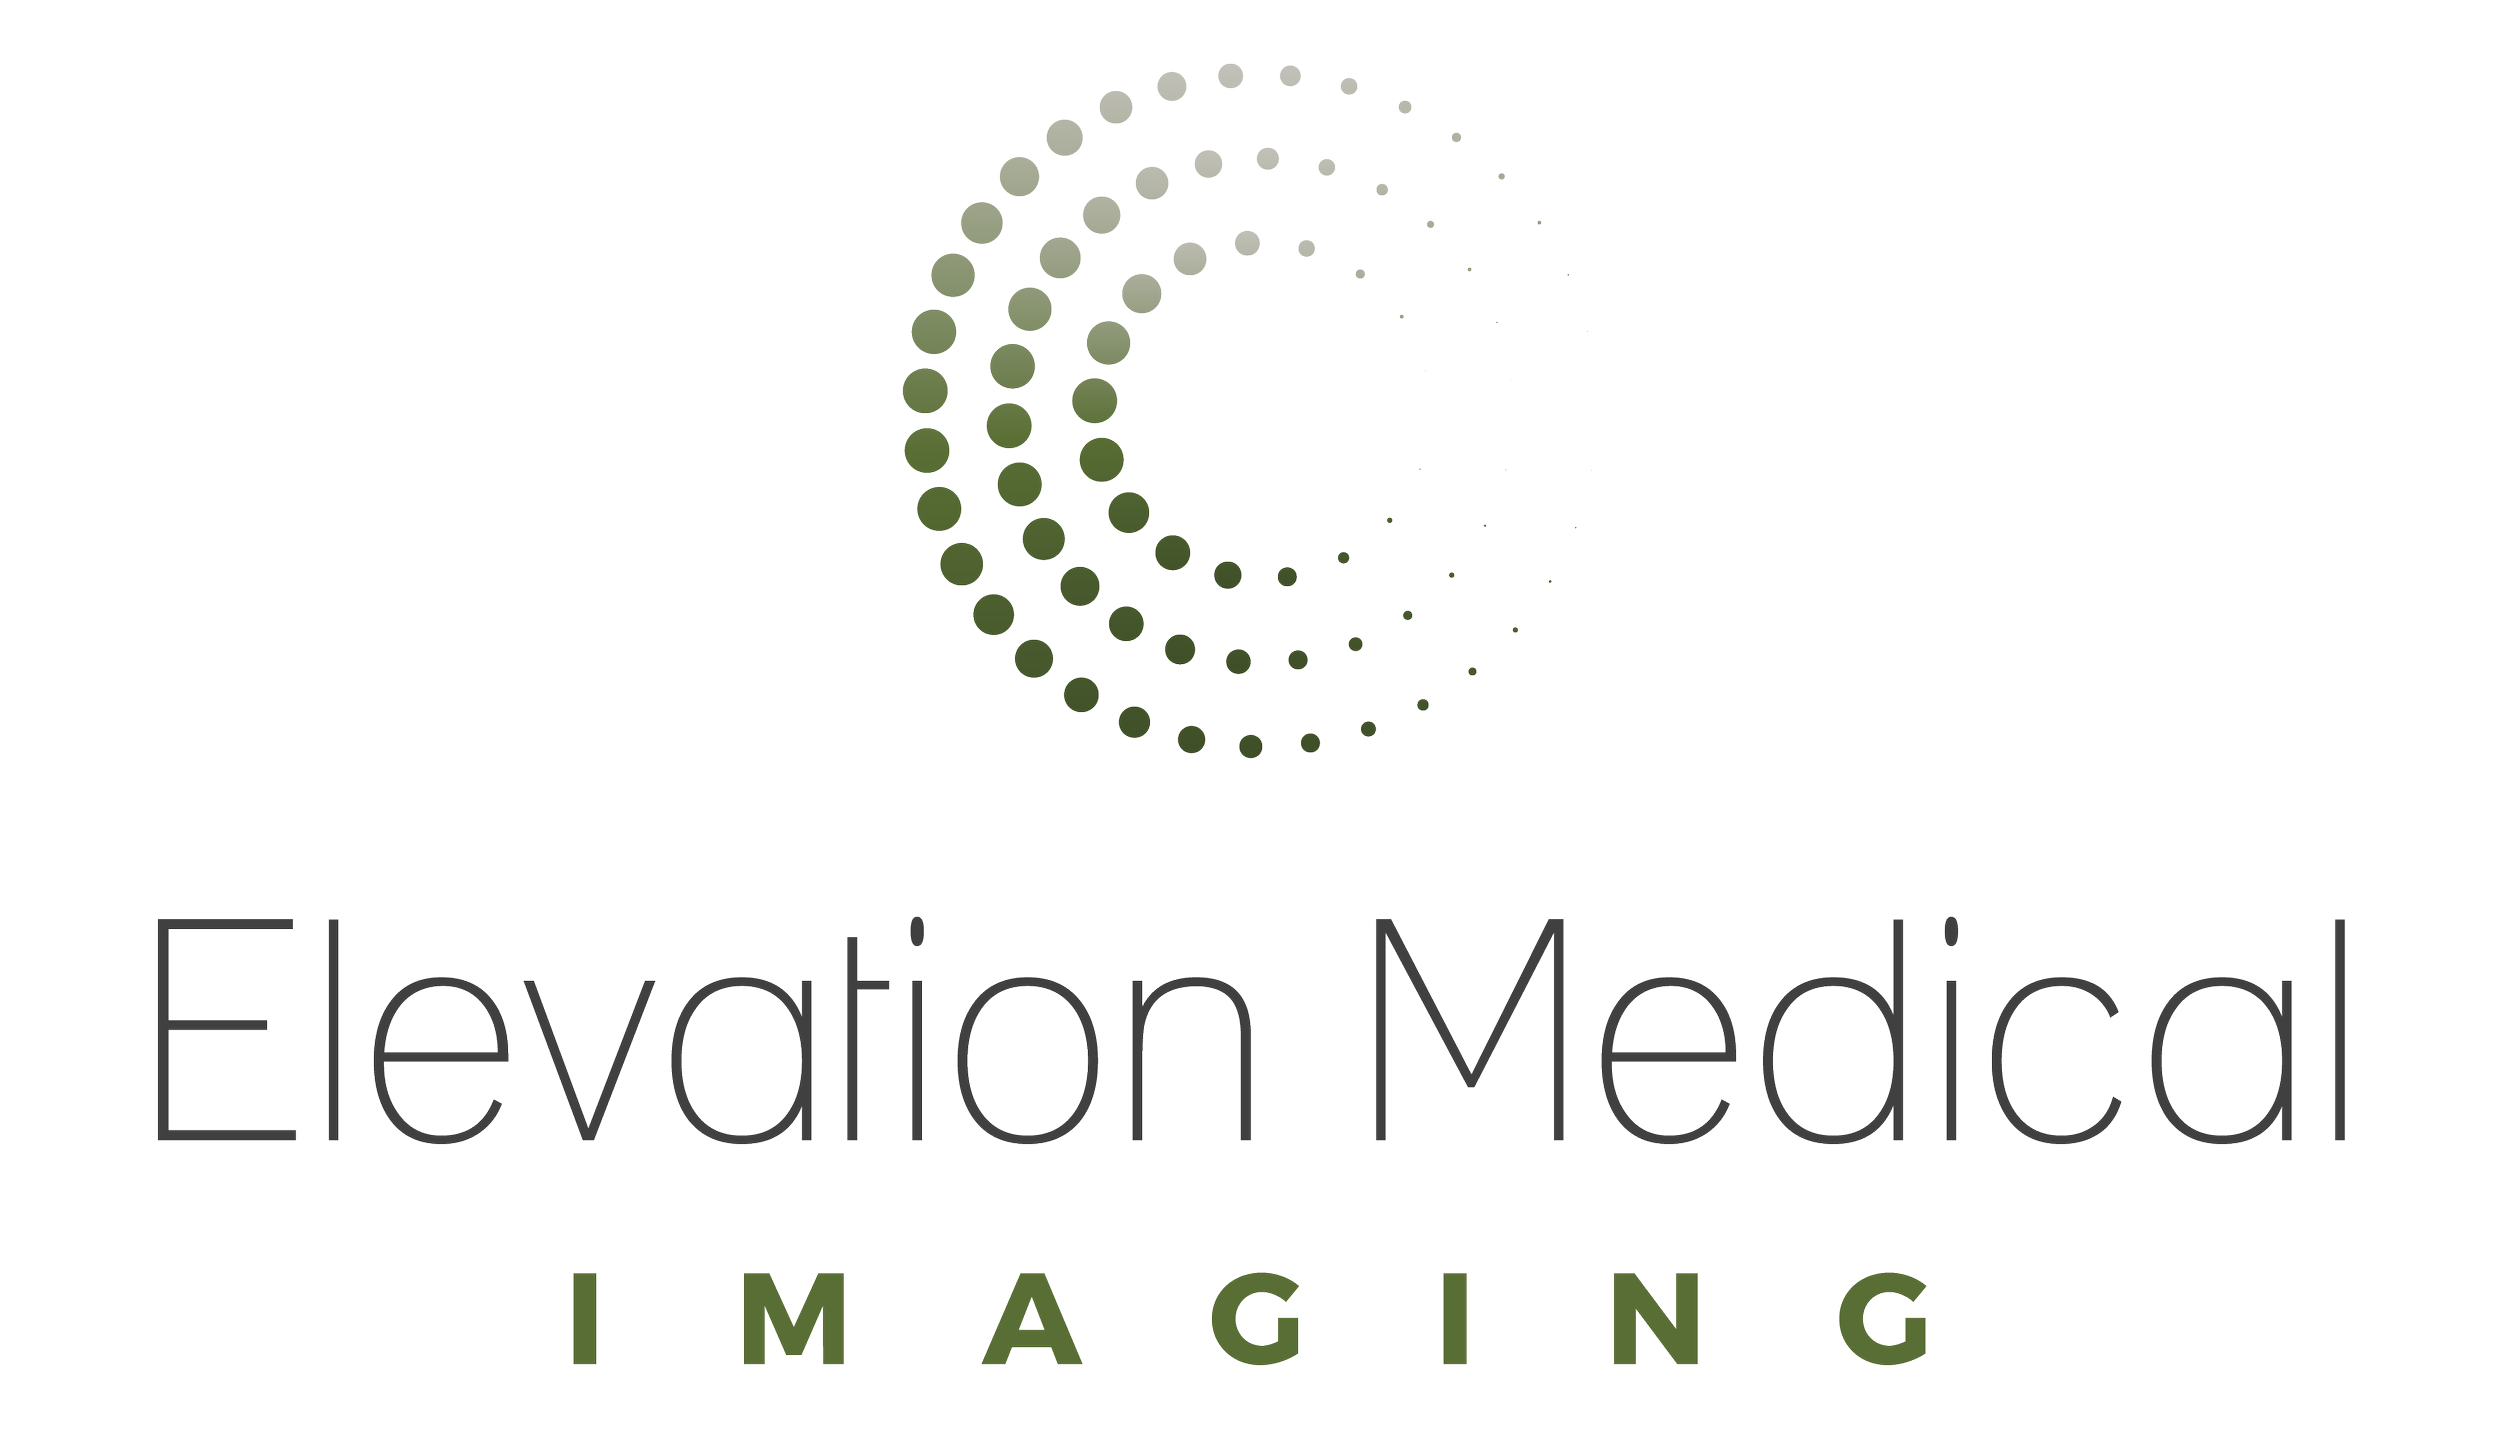 Elevation Medical Imaging 